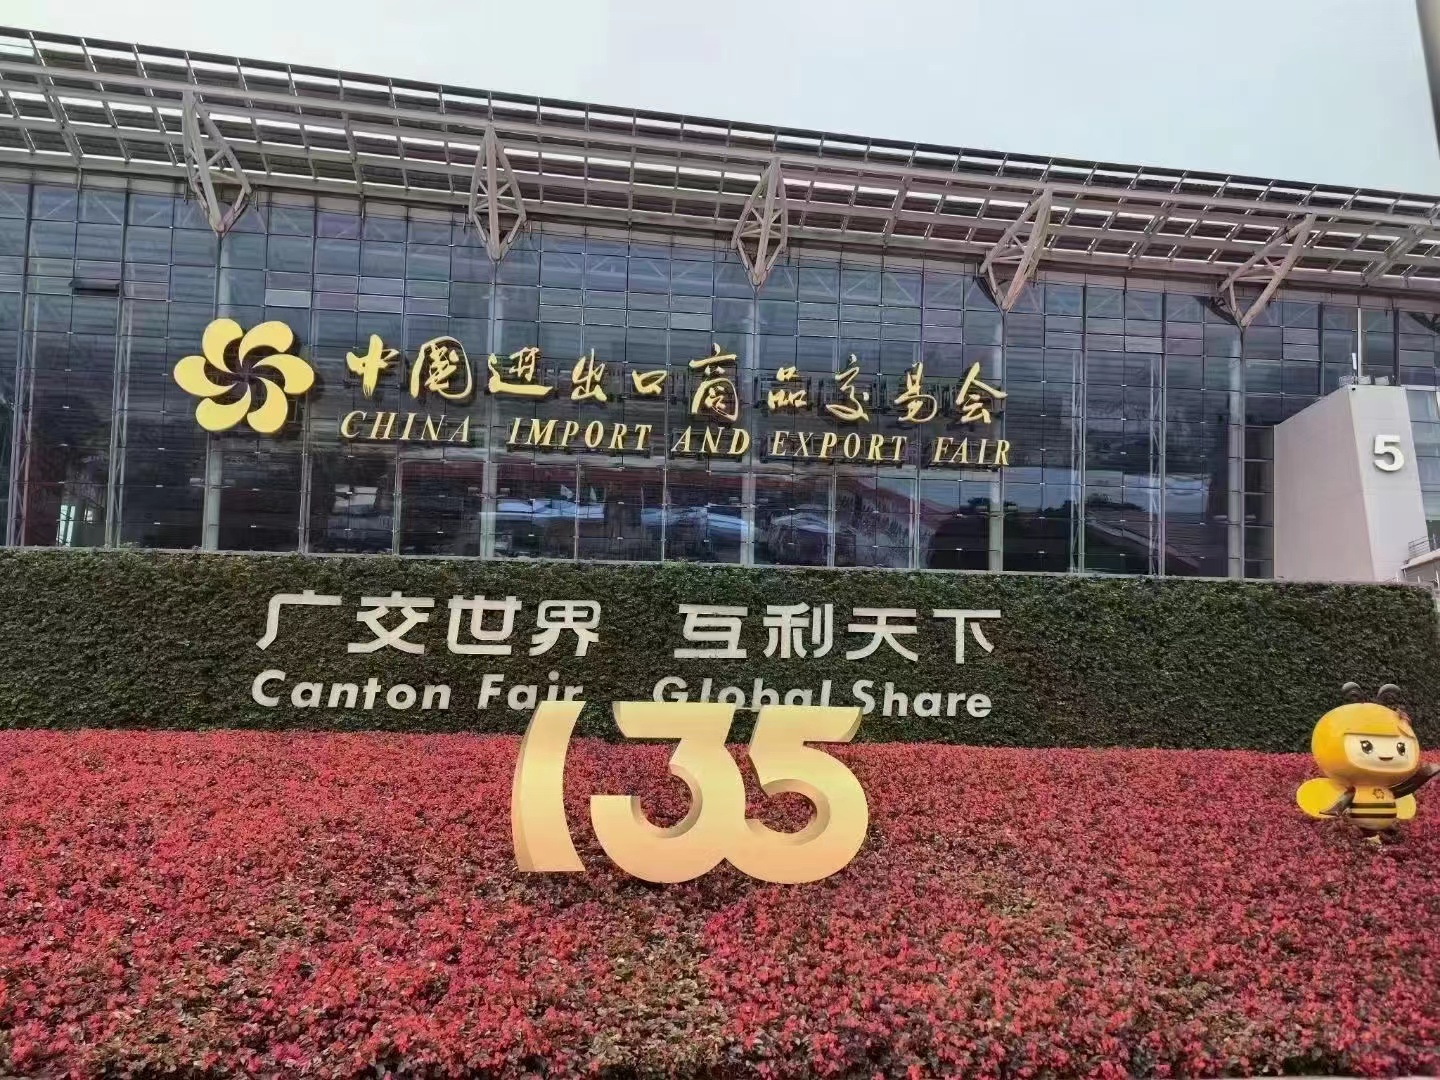 Benvenuti alla 135a Fiera di Canton e non vediamo l'ora di incontrarvi a Guangzhou